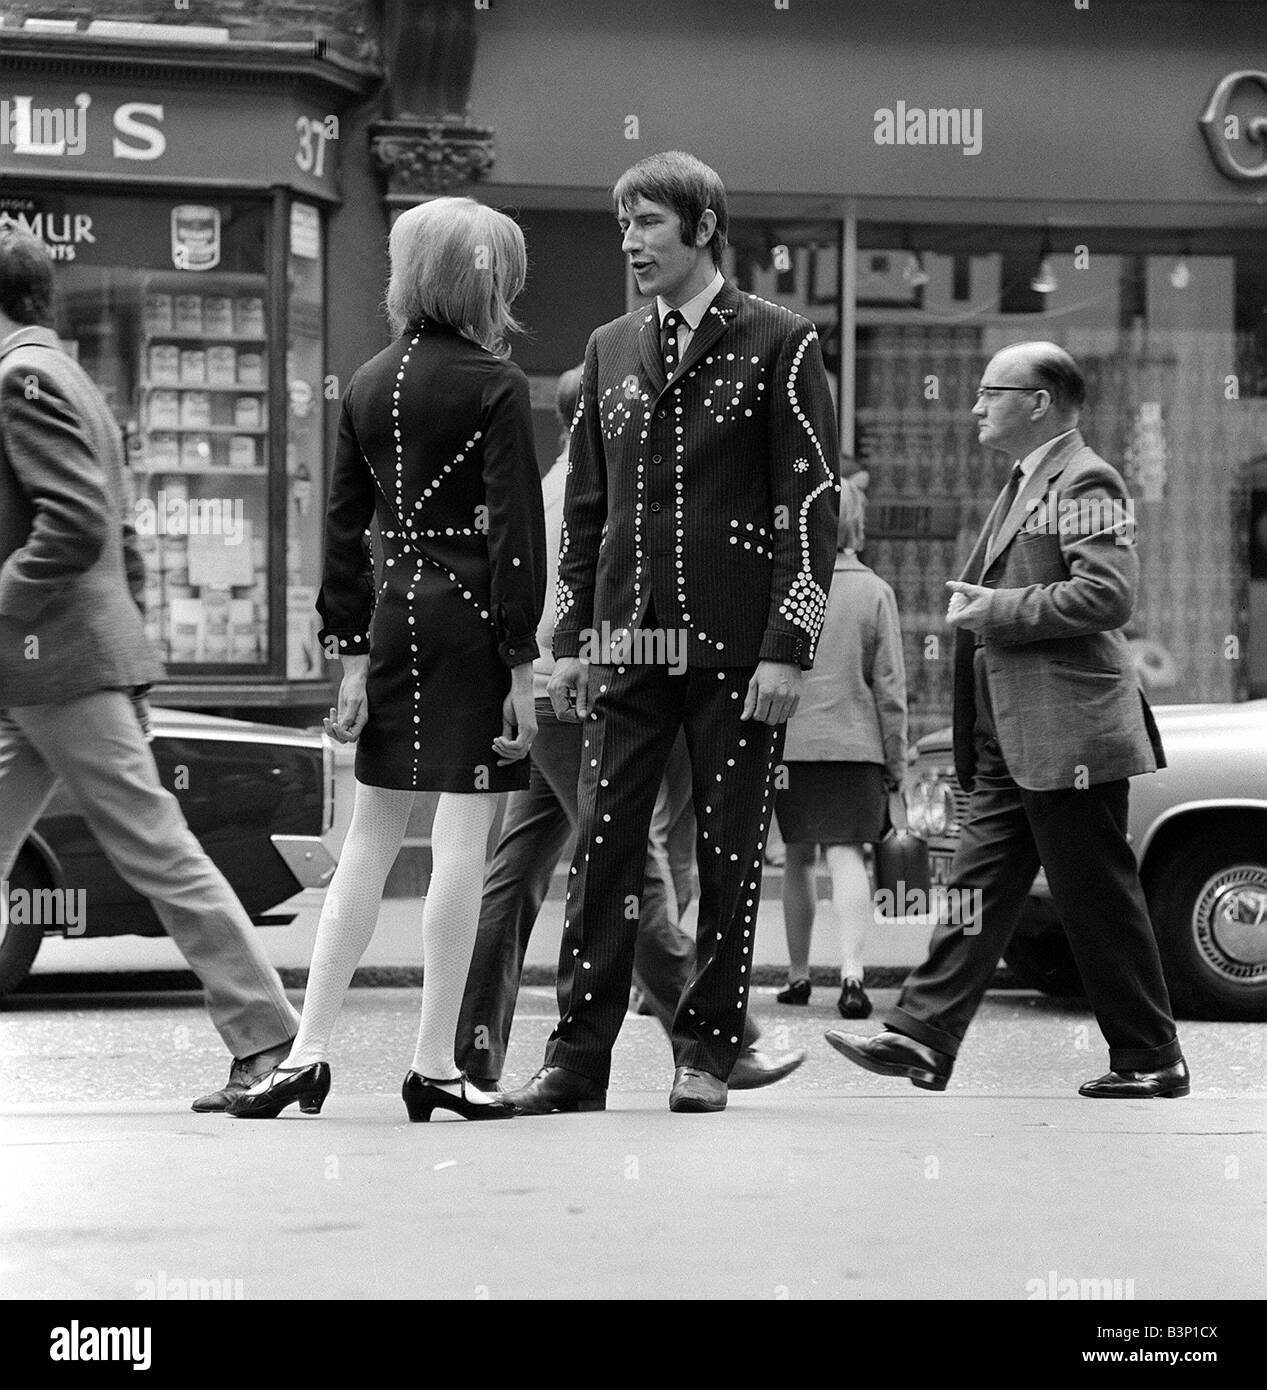 Mode Mod Carnaby Street fashion Oktober 1966 Mod in der Carnaby Street London, ein Mann und eine Frau auf der Straße sprechen Stockfoto